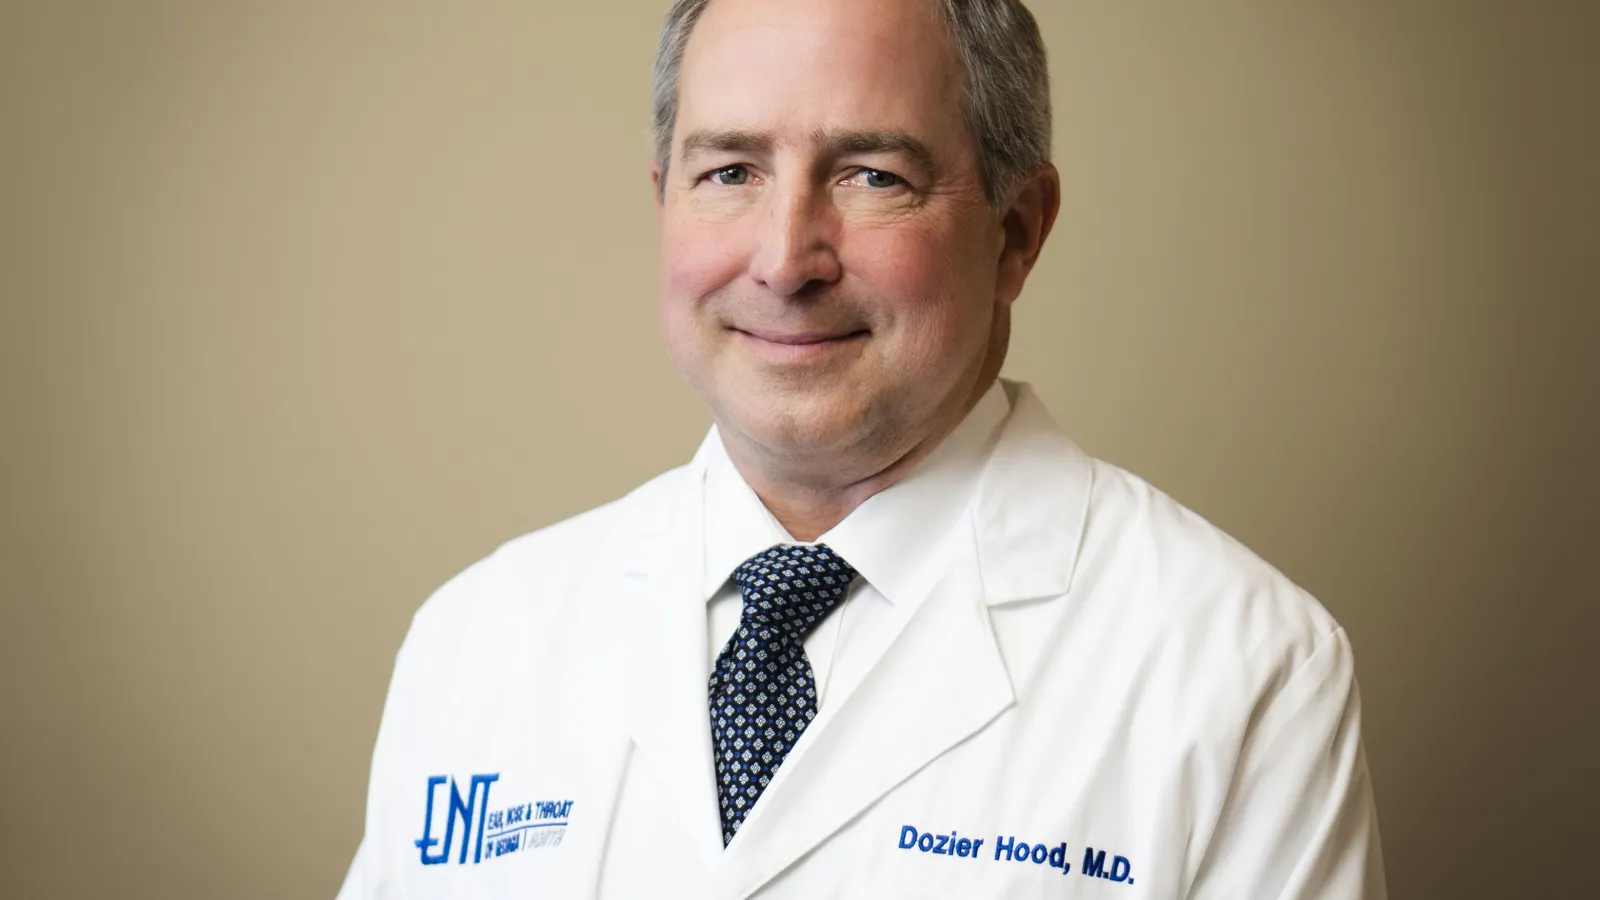 Meet Dr. Dozier Hood image